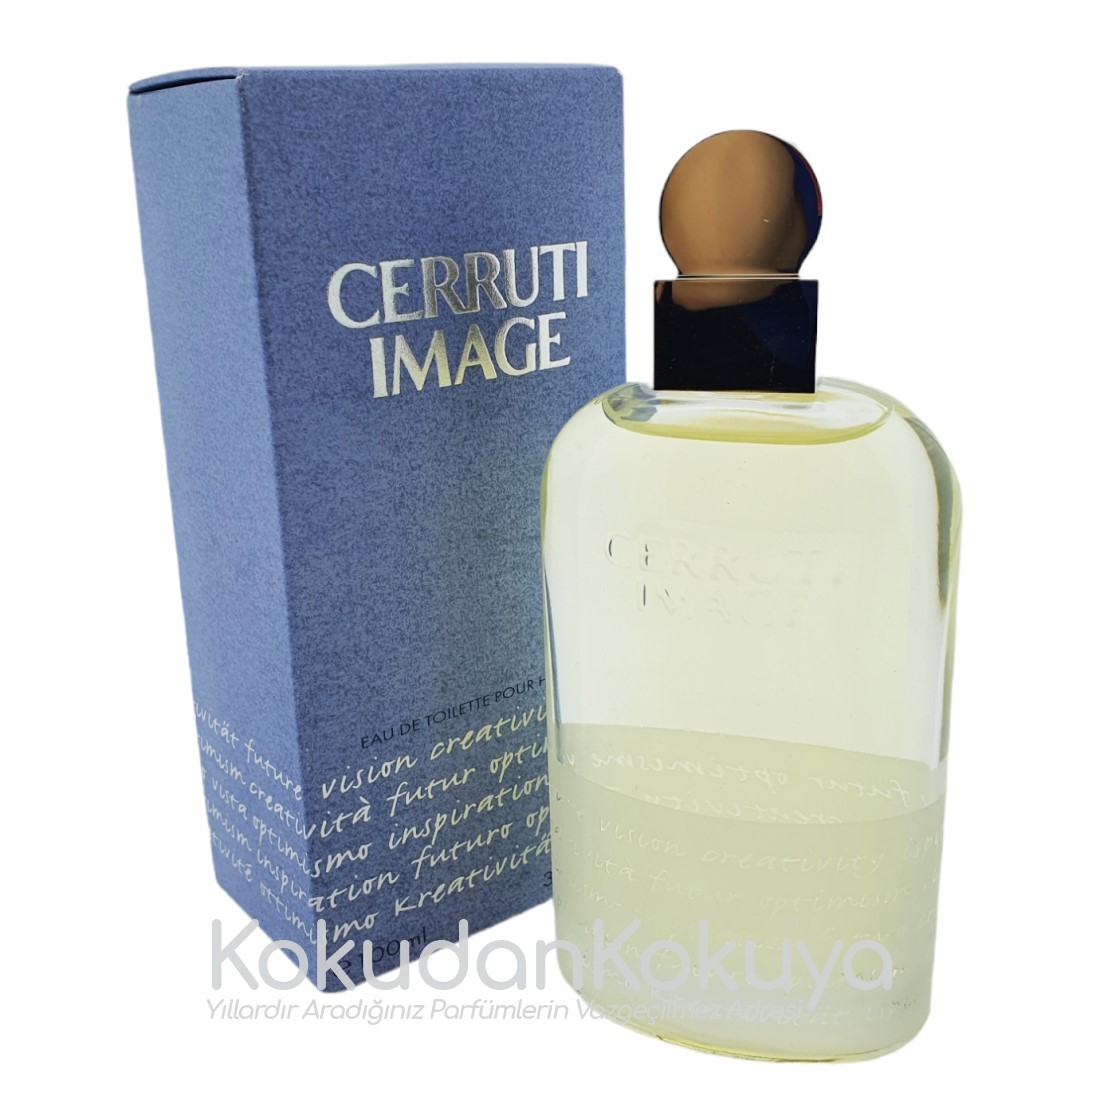 NINO CERRUTI Image pour Homme (Vintage) Parfüm Erkek 100ml Eau De Toilette (EDT) Dökme 